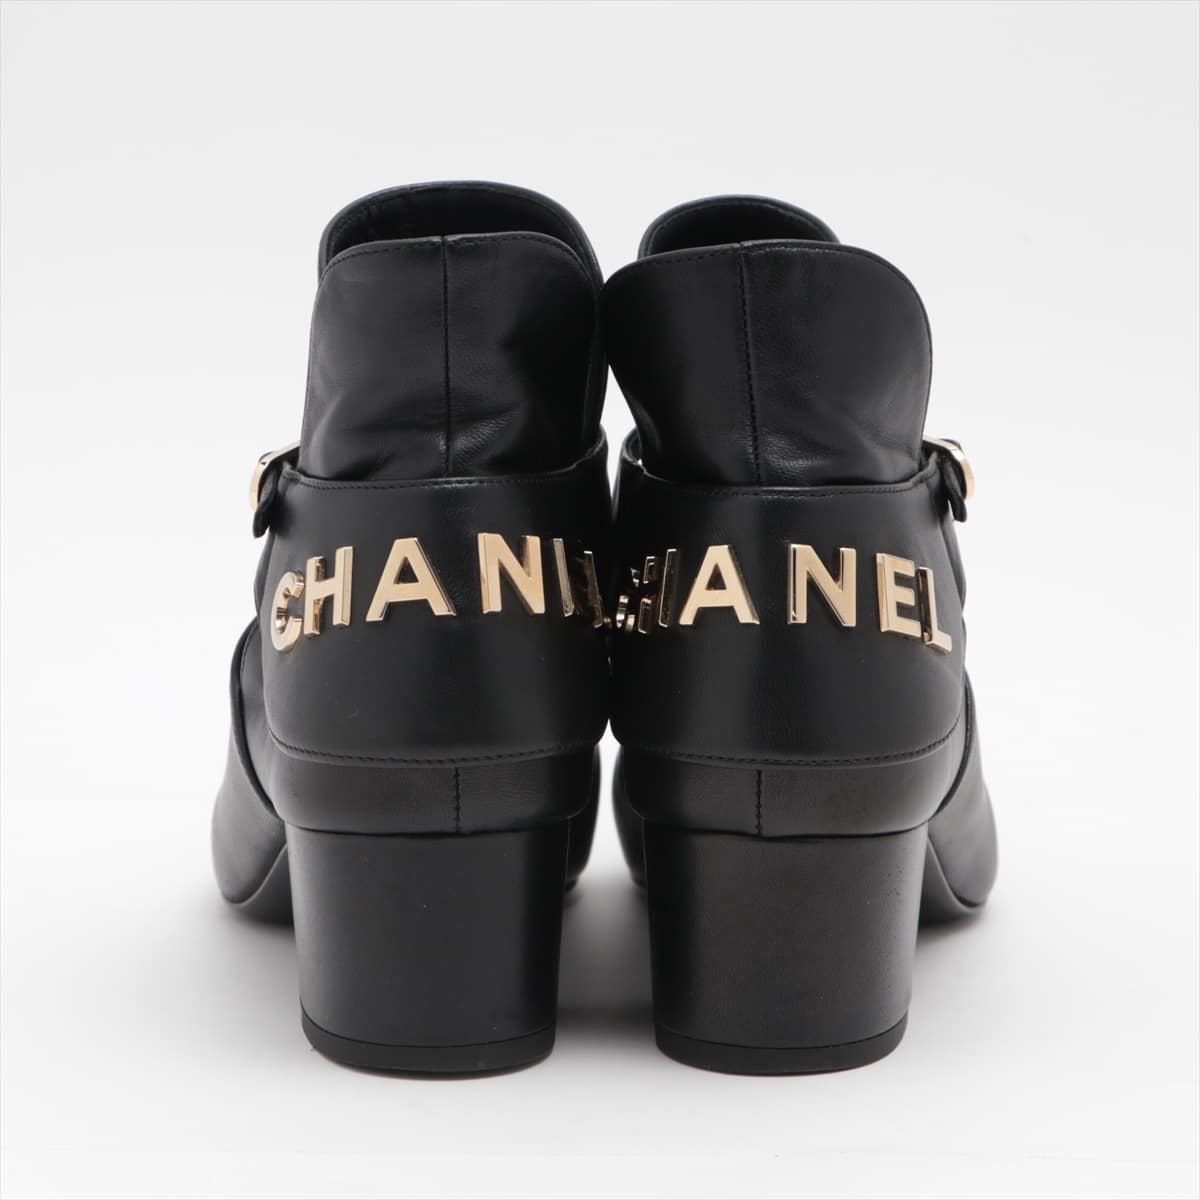 【CHANEL】シャネル ベルベット 黒 レディース ブーツ約8cmヒール高